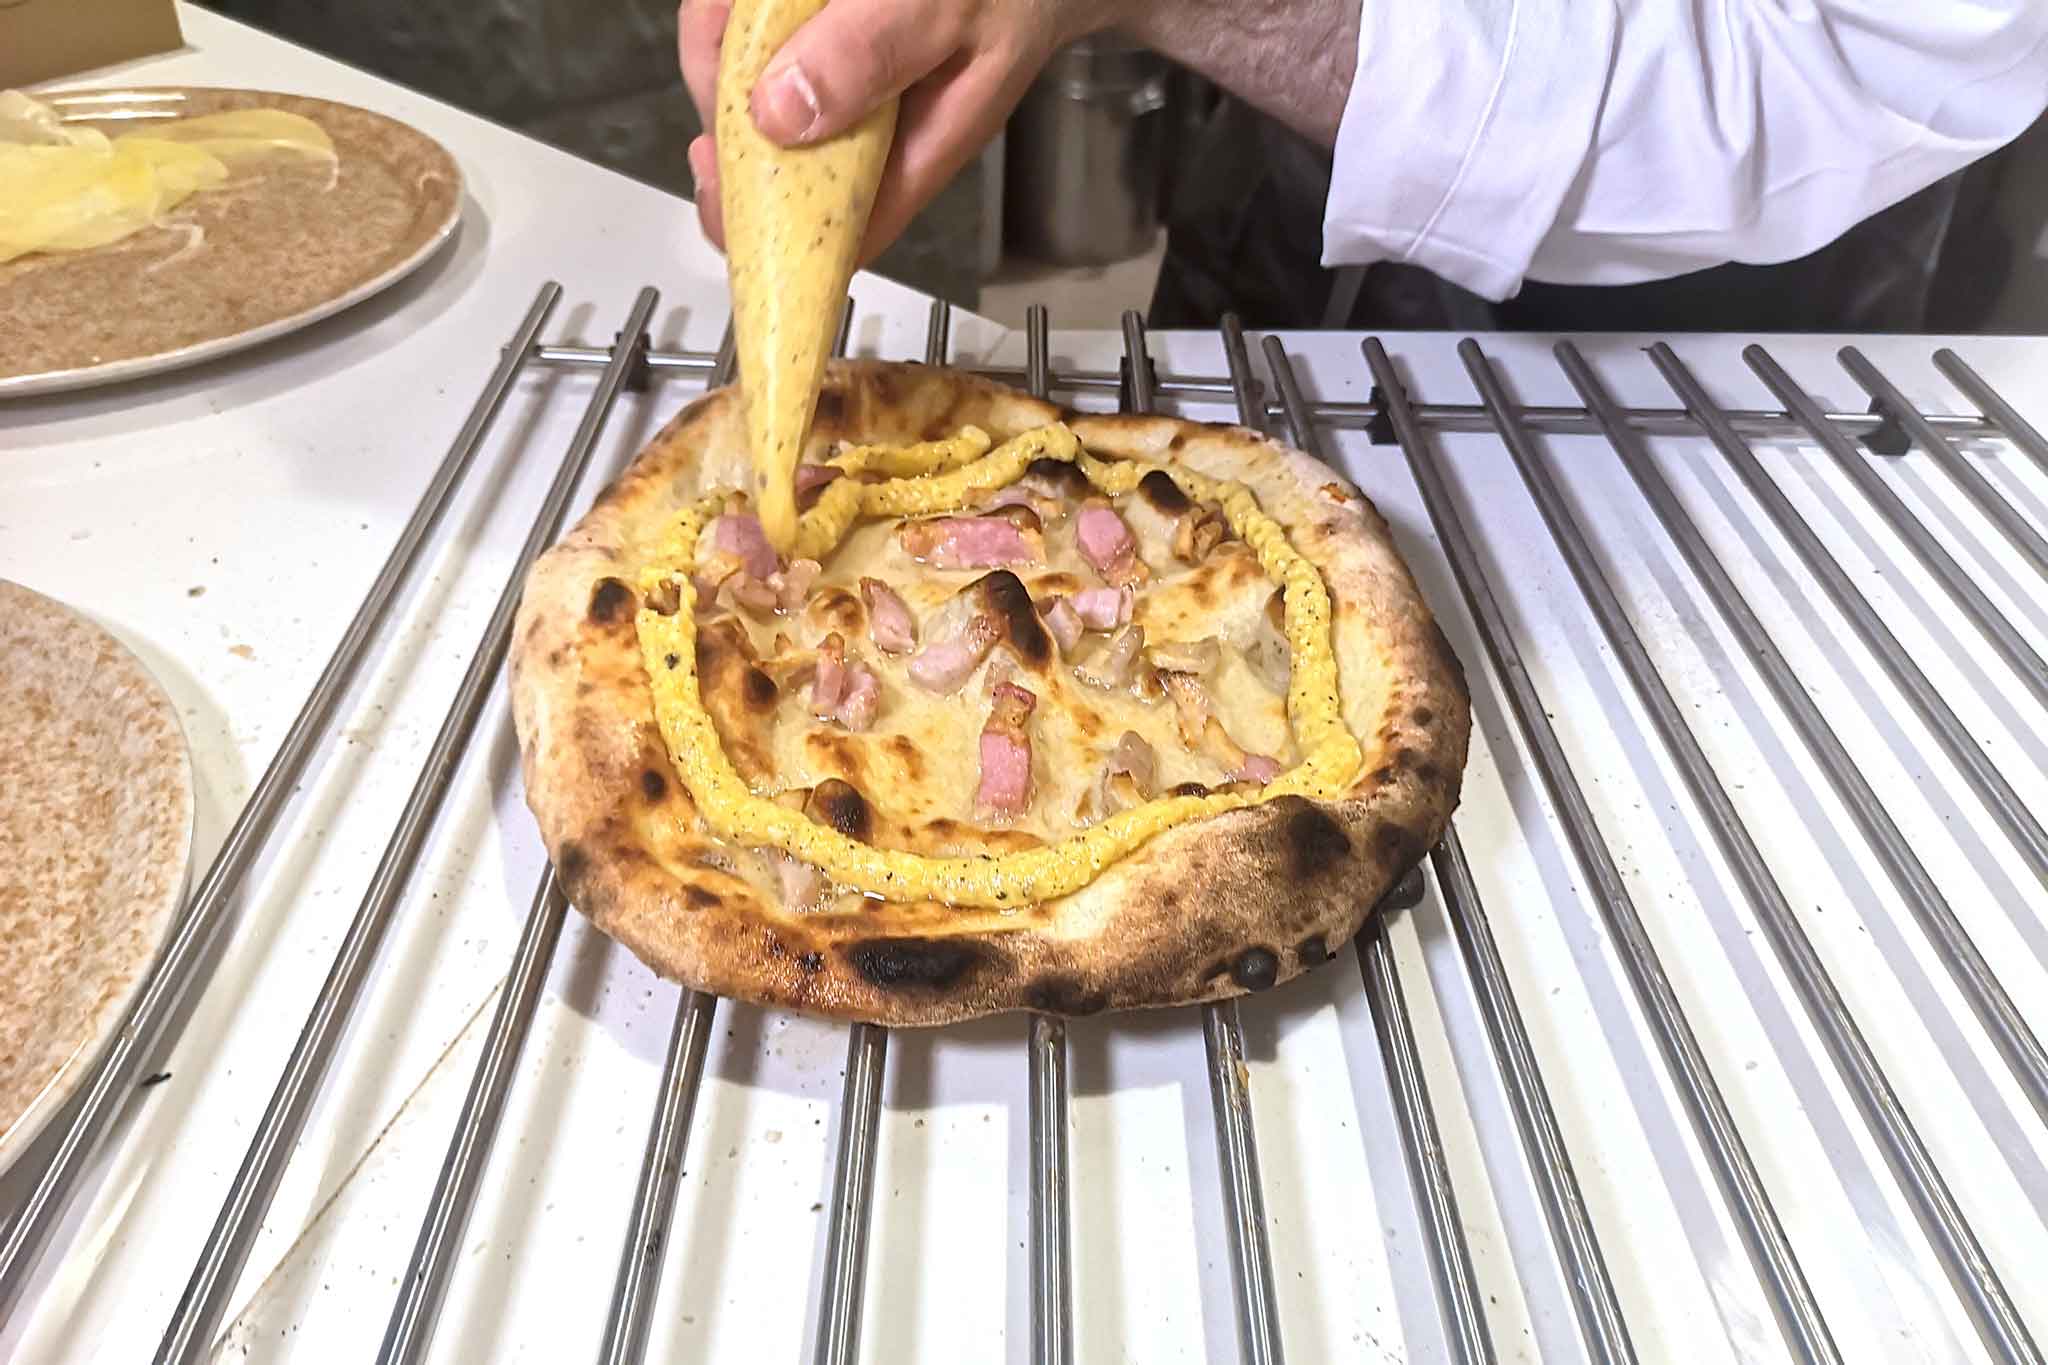 Sforno pizzeria Martina Franca pizza carbonara preparazione